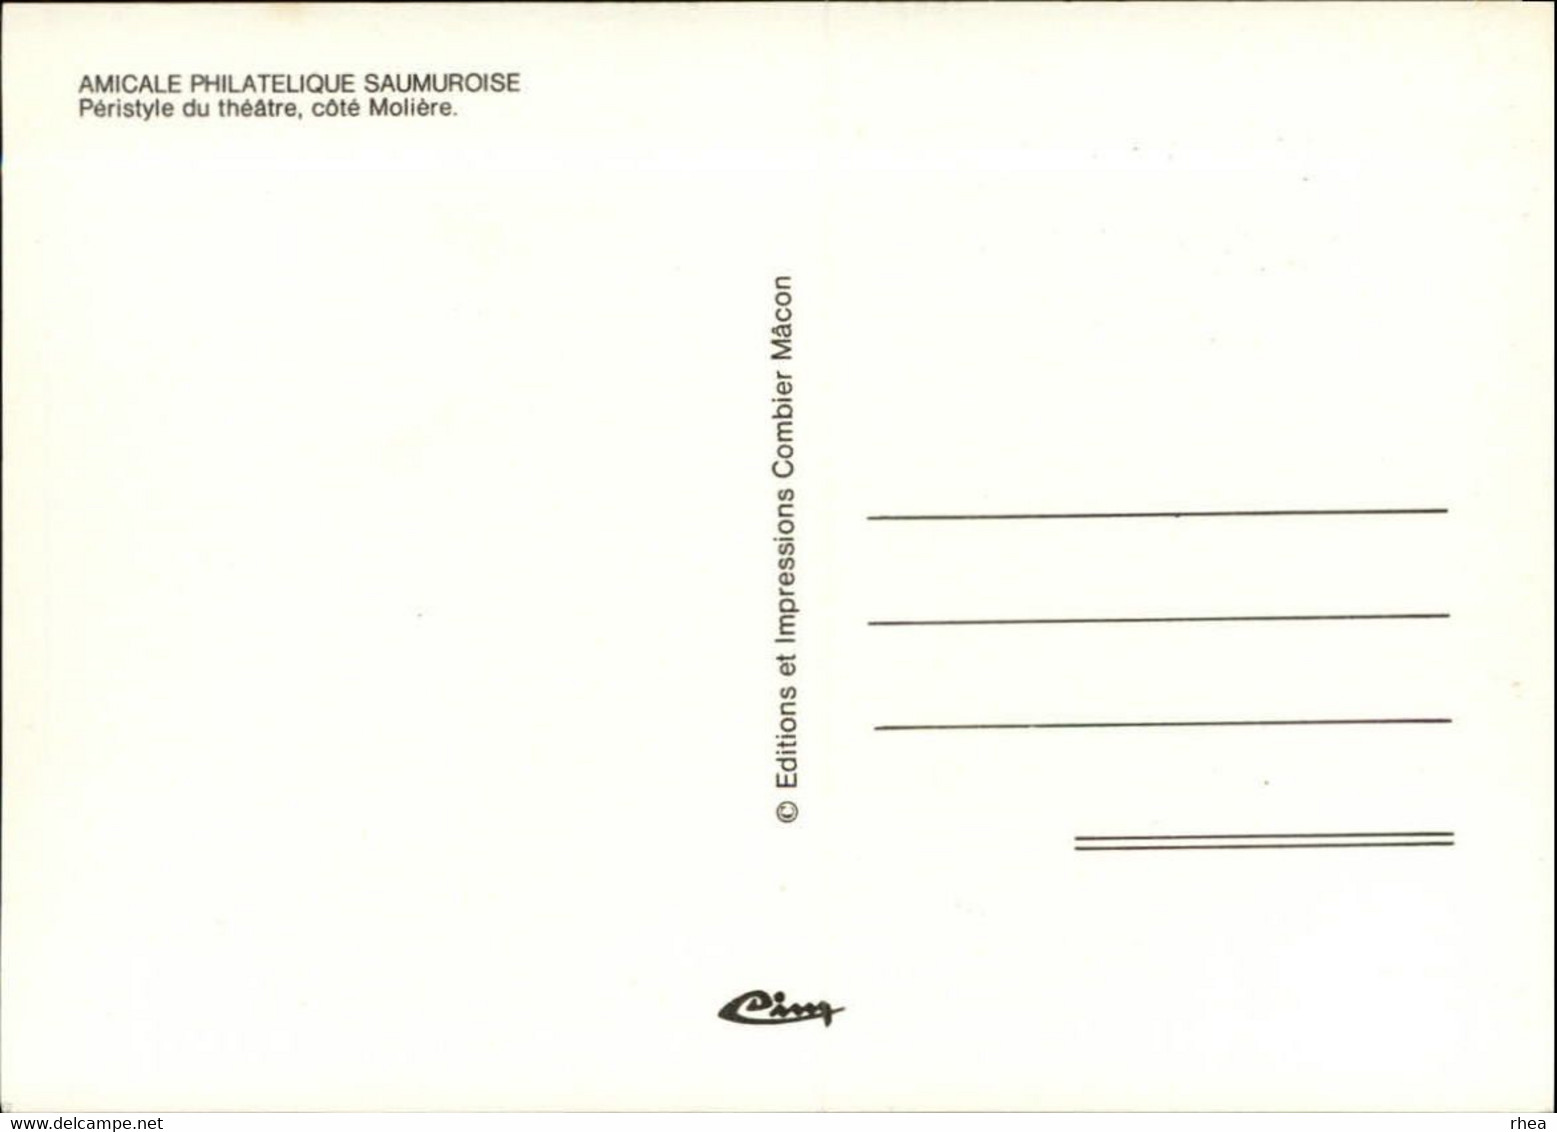 SALONS DE COLLECTIONS - Salon De Cartes Postales -  SAUMUR - 1984 - Dessin De Granger - Bourses & Salons De Collections